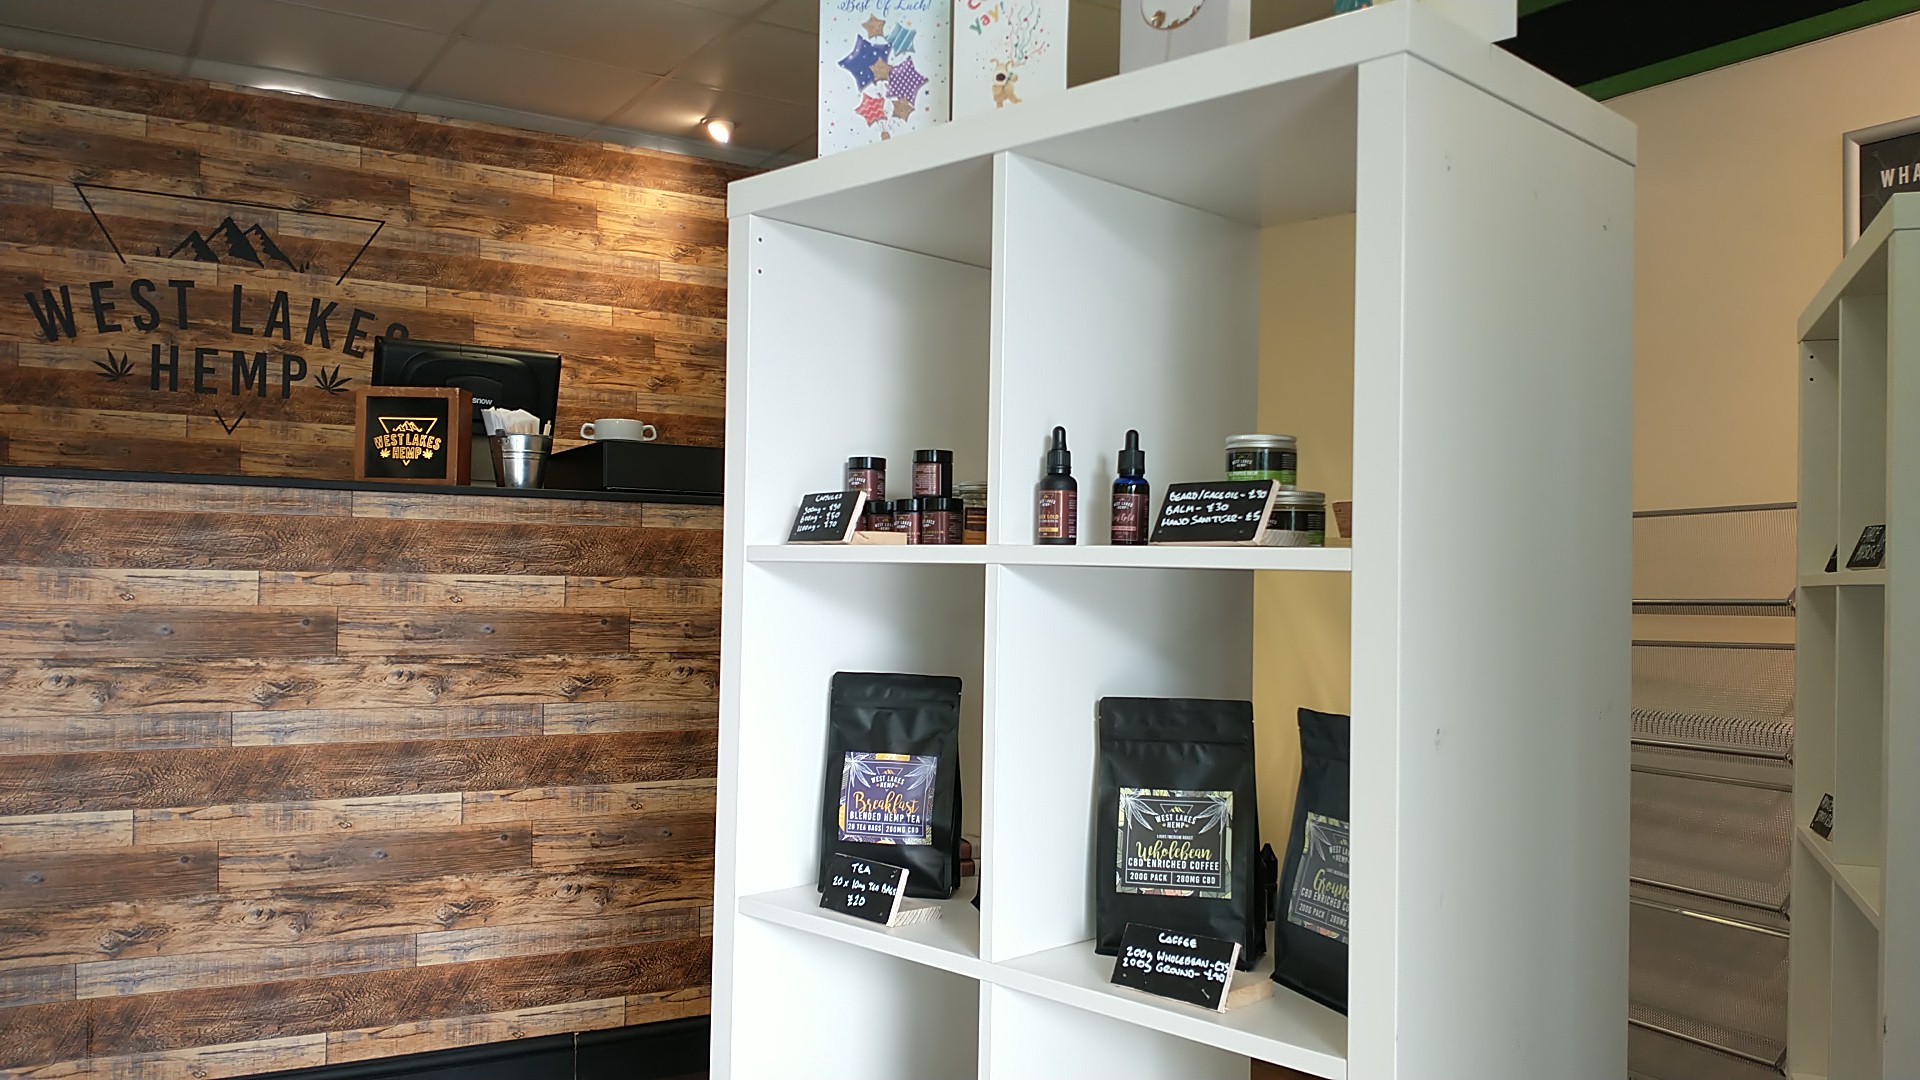 West Lakes Hemp Eco - Store & Coffeeshop